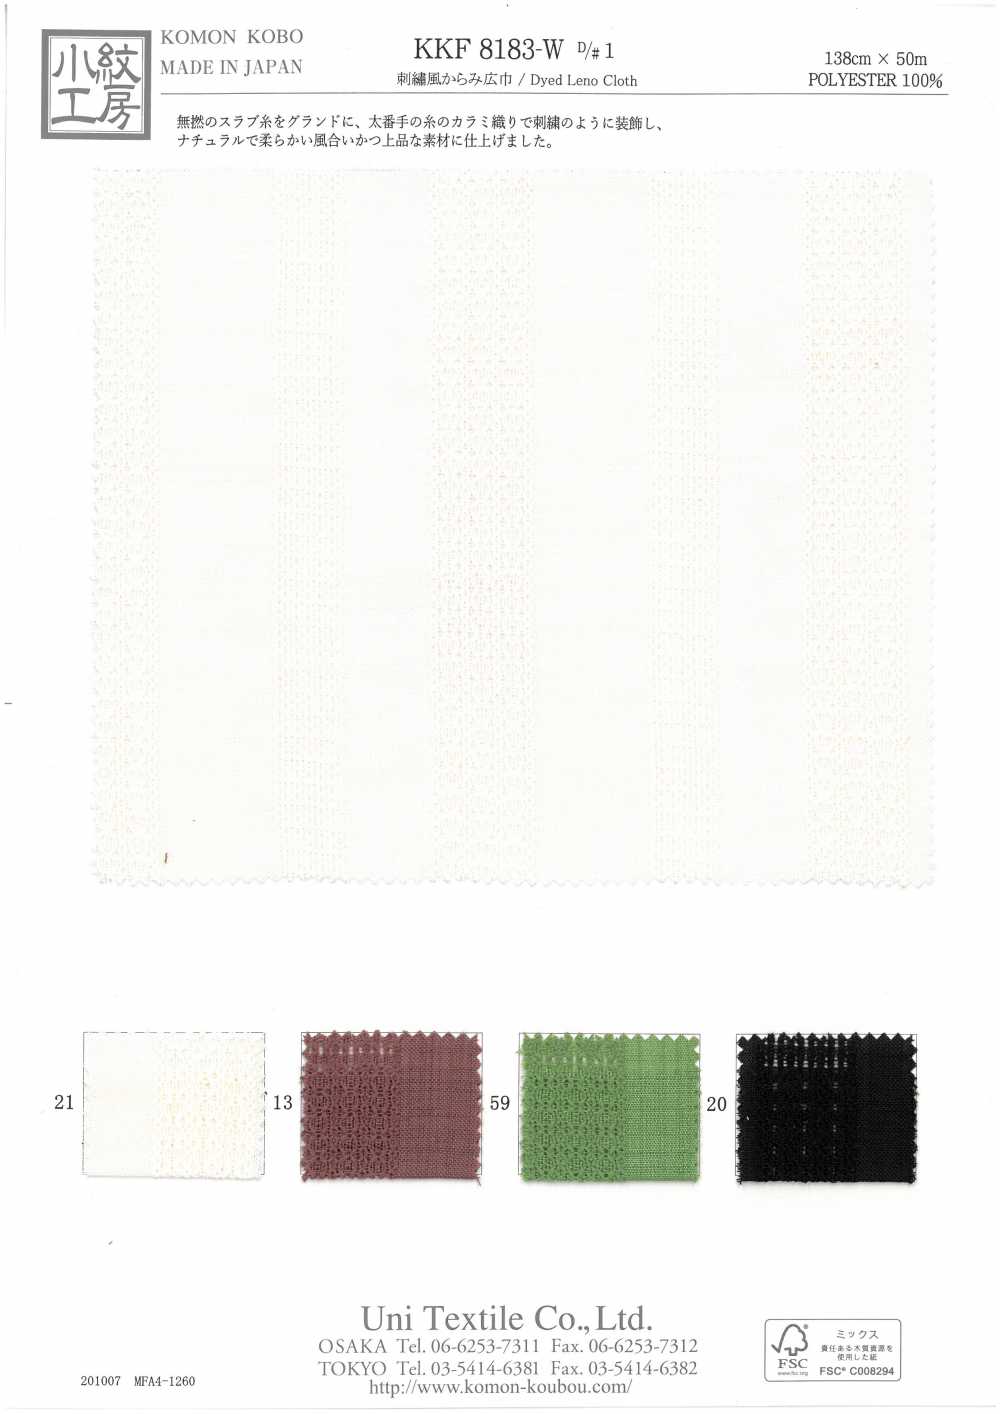 KKF8183-W-D/1 刺繍風からみ広巾[生地] 宇仁繊維